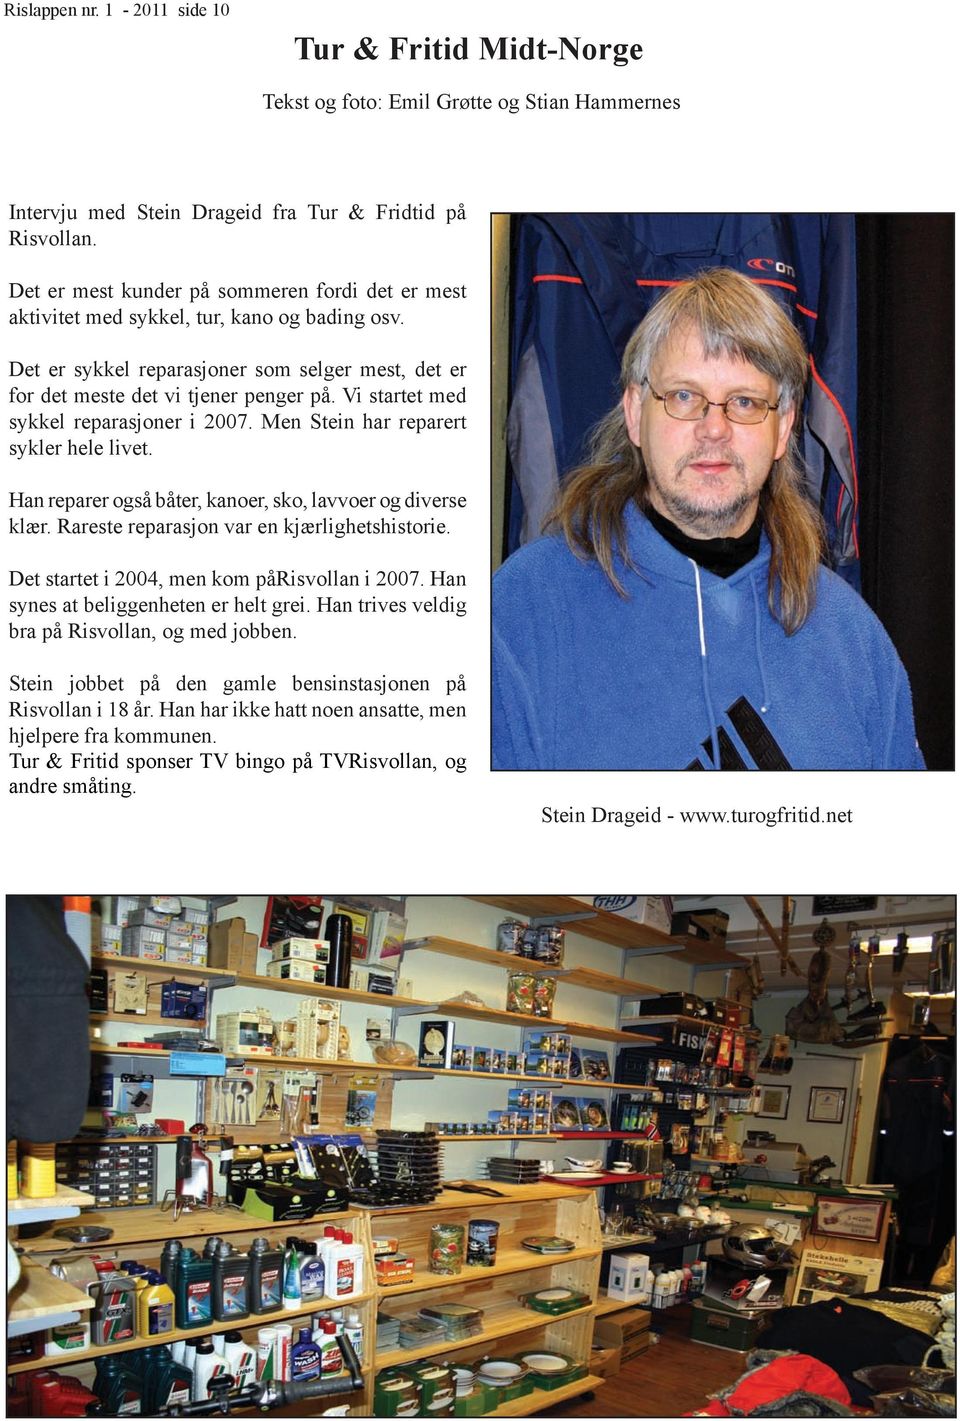 Vi startet med sykkel reparasjoner i 2007. Men Stein har reparert sykler hele livet. Han reparer også båter, kanoer, sko, lavvoer og diverse klær. Rareste reparasjon var en kjærlighetshistorie.